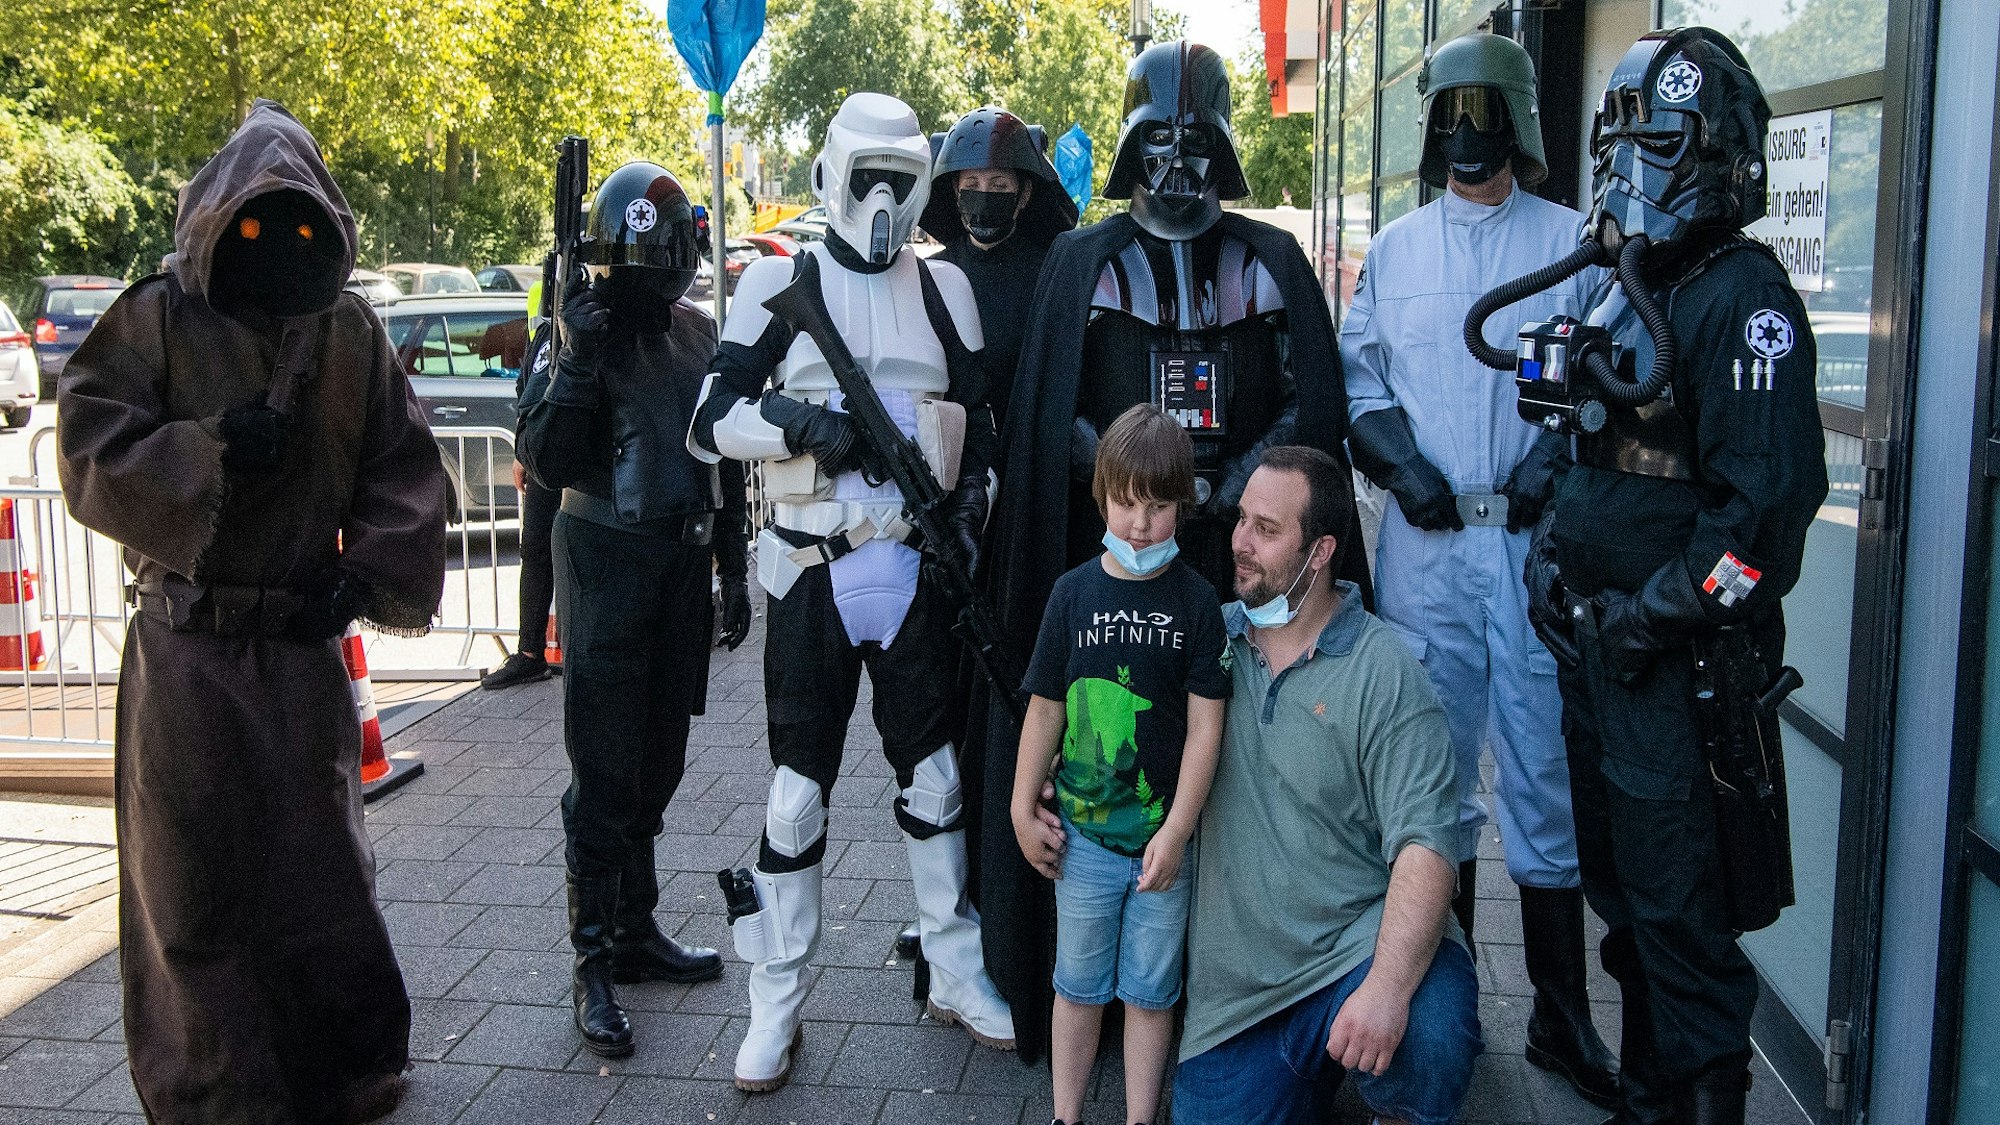 Philipp Oszcera und sein Sohn Luke lassen sich von seiner Frau Nadine mit Darstellern in Kostümen aus der Filmreihe Star Wars vor dem Duisburger Impf-Zentrum fotografieren.